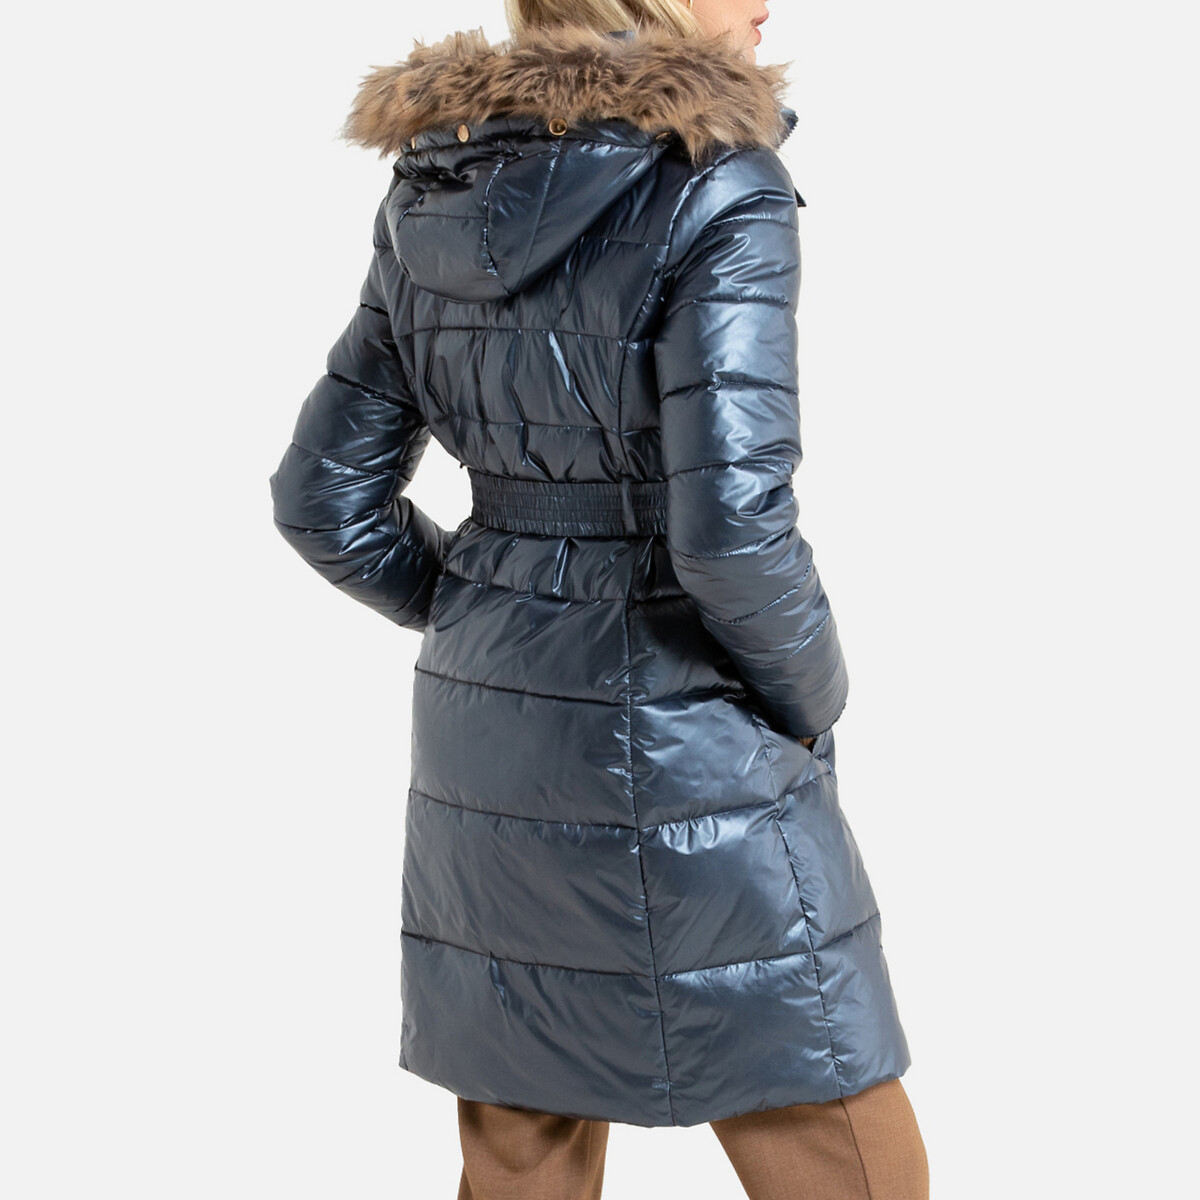 Куртка LaRedoute Стеганая средней длины с капюшоном зимняя модель 50 (FR) - 56 (RUS) синий, размер 50 (FR) - 56 (RUS) Стеганая средней длины с капюшоном зимняя модель 50 (FR) - 56 (RUS) синий - фото 4